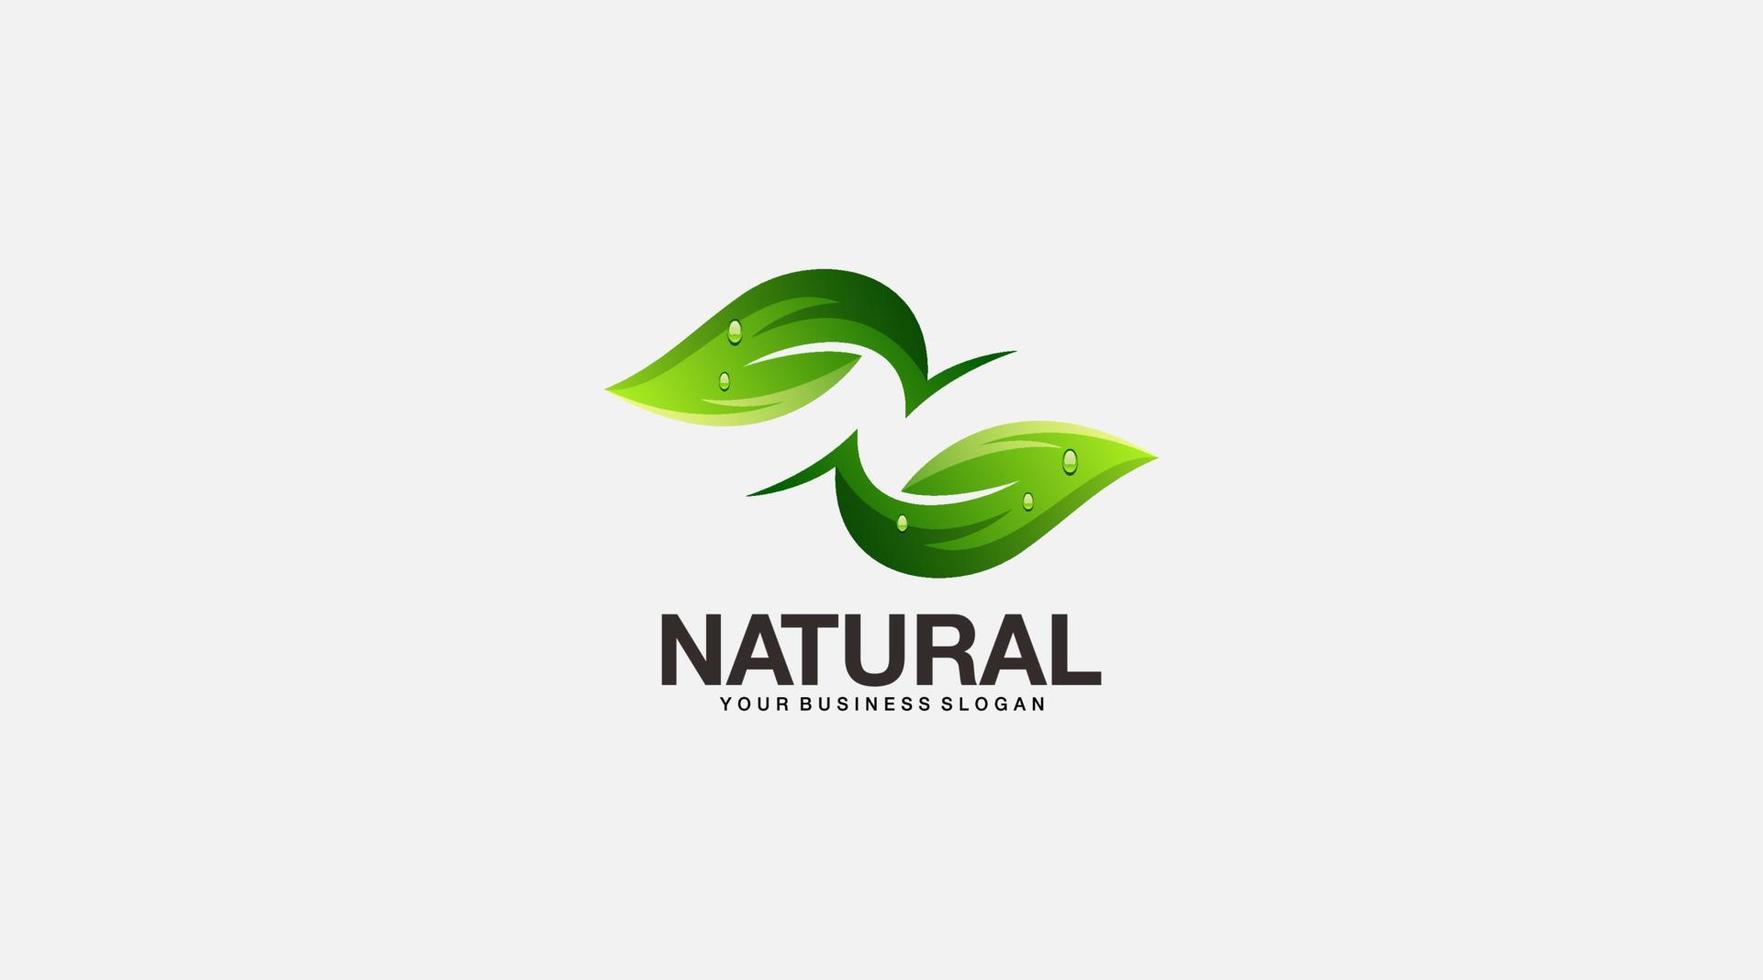 naturale vettore logo design modello icona